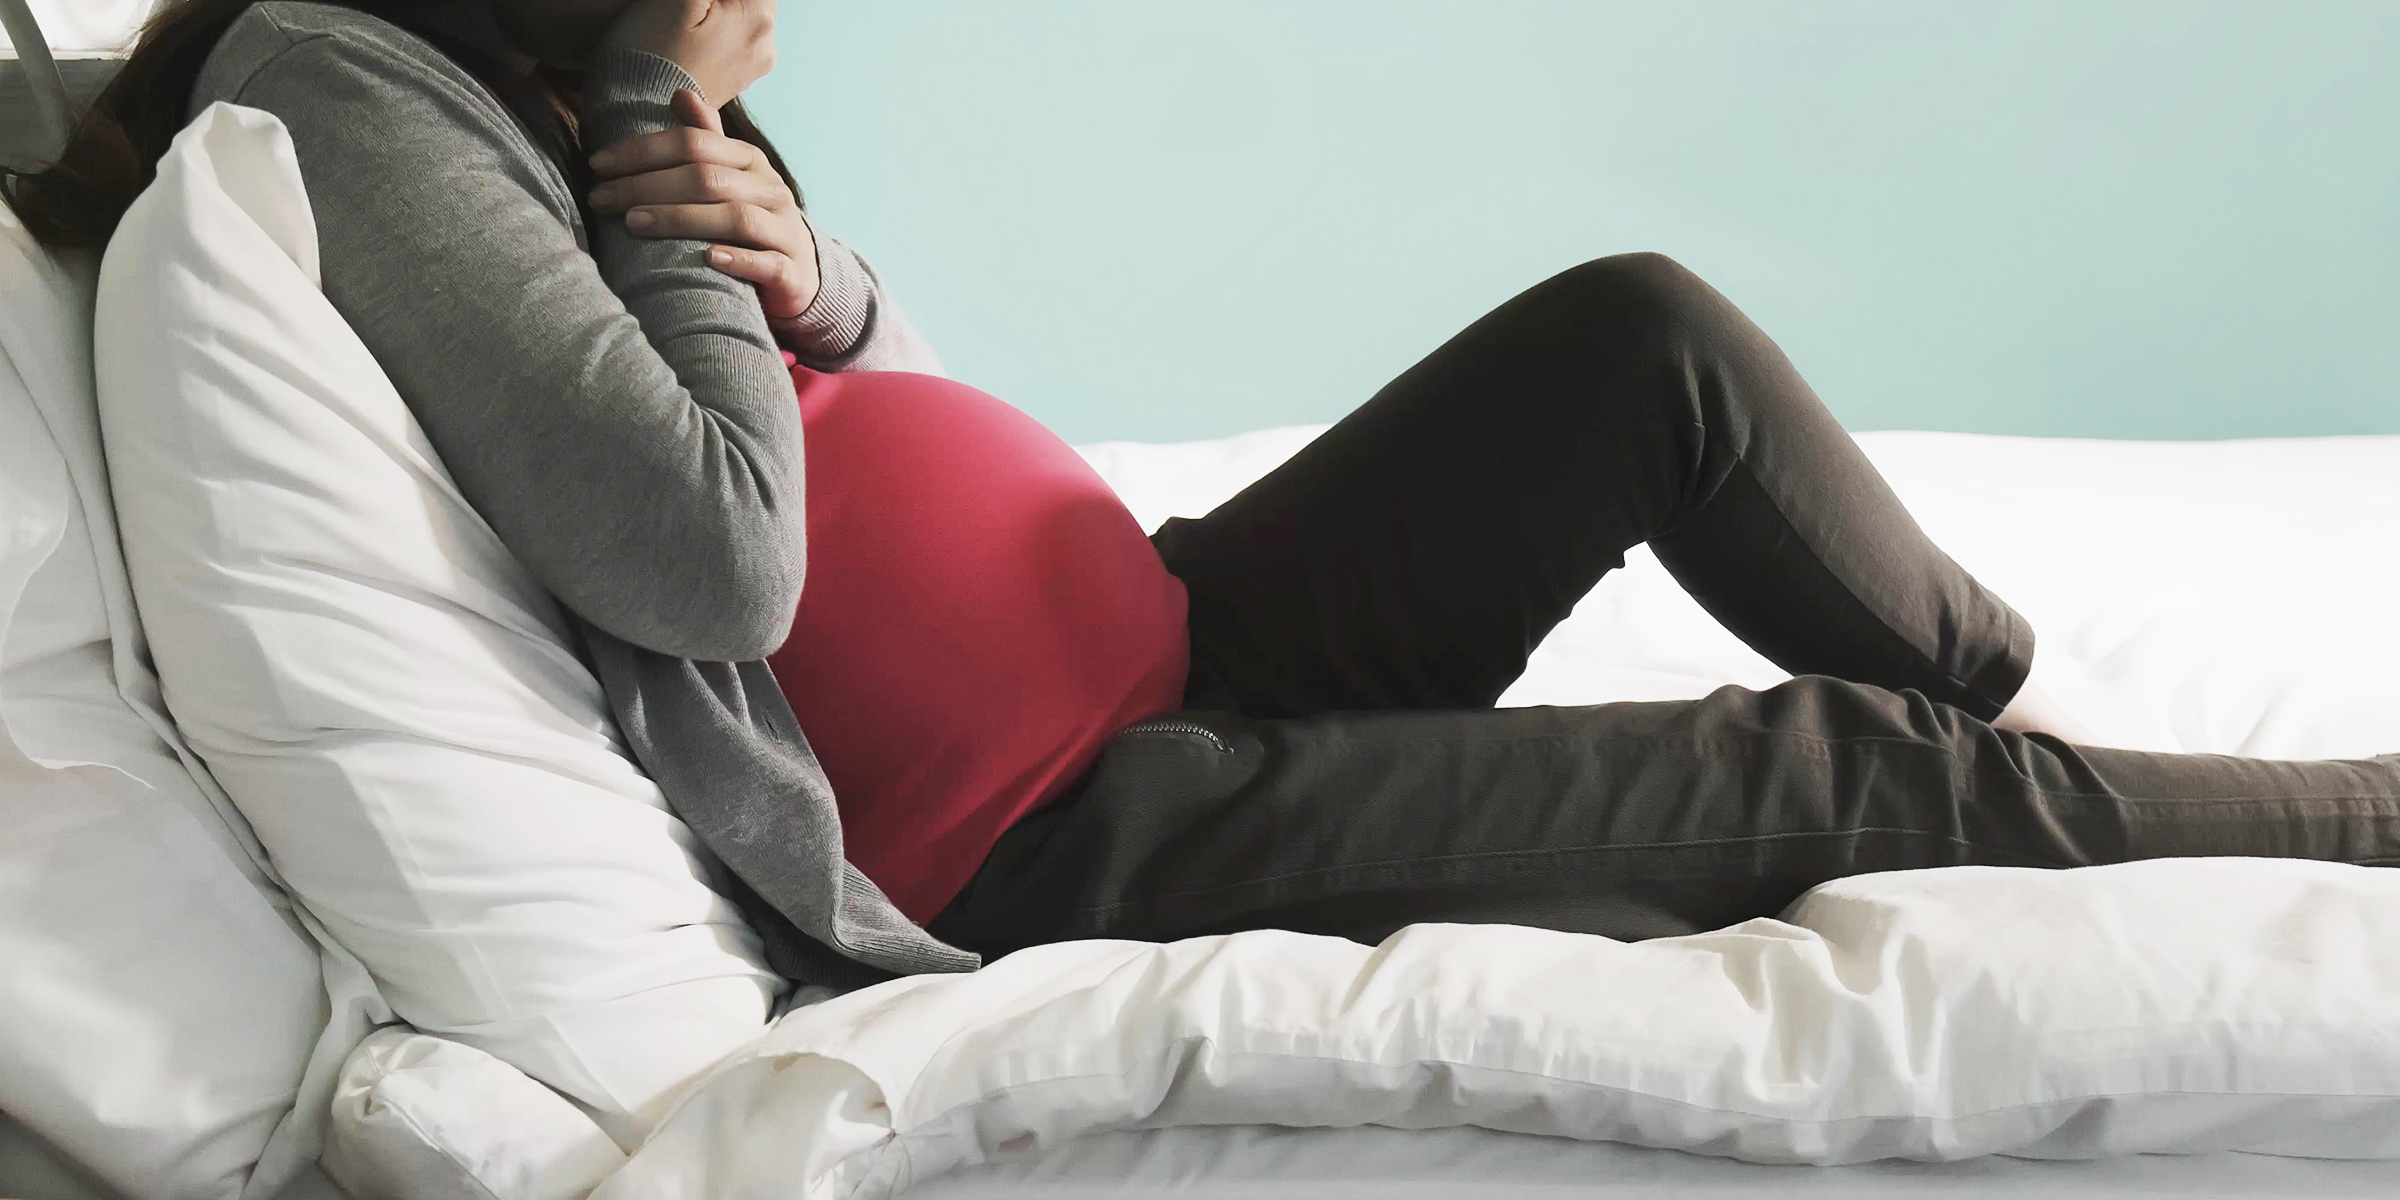 Femme enceinte assise sur un lit | Source : Shutterstock